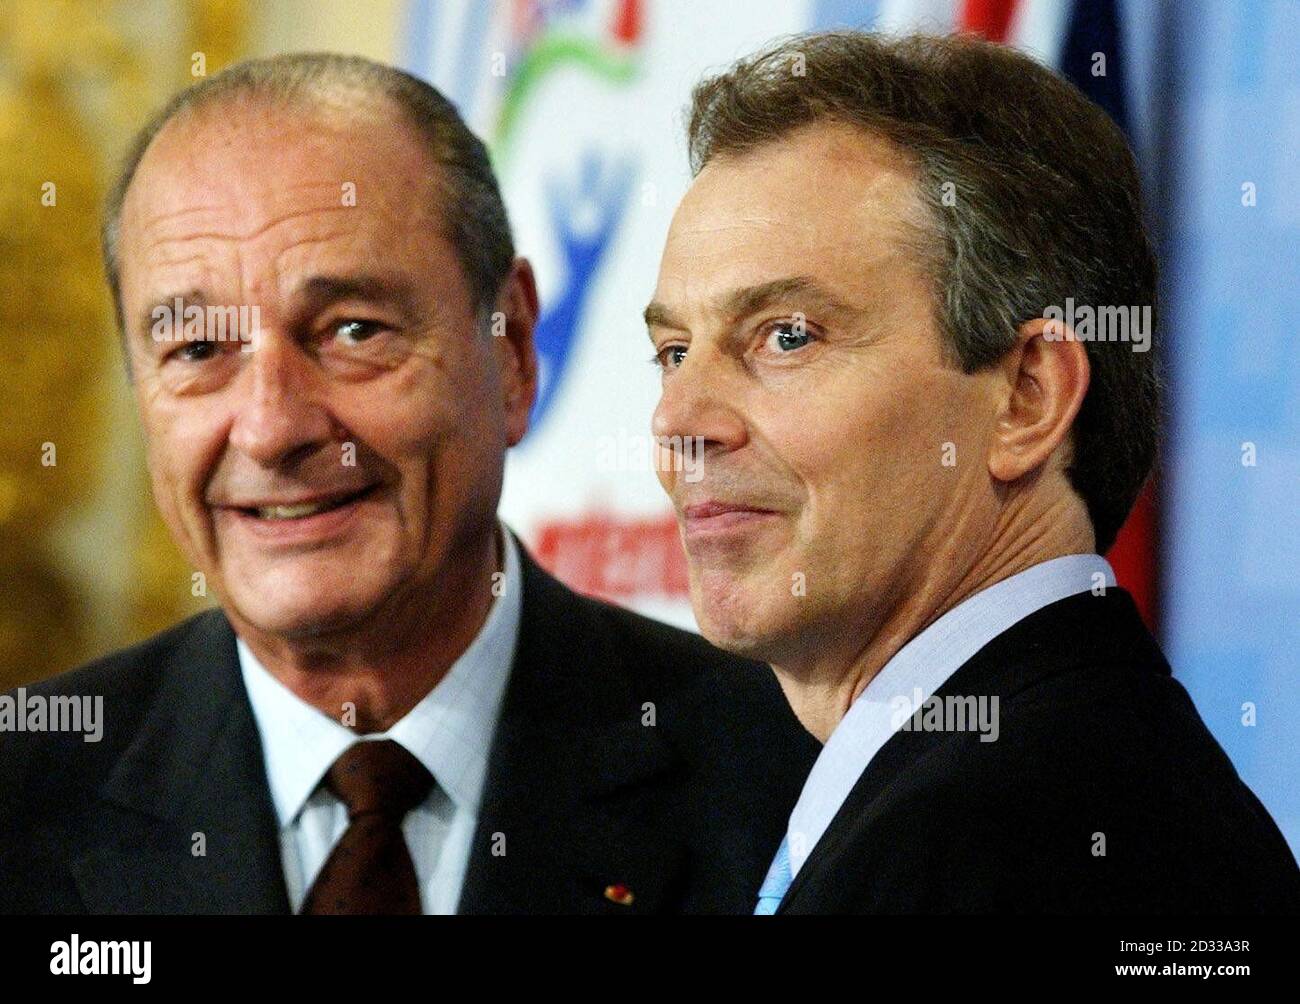 Der britische Premierminister Tony Blair (R) und der französische Präsident Jacques Chirac während einer Pressekonferenz im Lancaster House im Zentrum von London. Herr Blair erklärte ihre Entschlossenheit, den internationalen Terrorismus nach den Selbstmordbombenanschlägen auf britische Ziele in Istanbul zu bekämpfen. Zum Abschluss des englisch-französischen Gipfels erklärte Blair neben dem französischen Staatschef, dass er sich einig war, dass die Geißel des Terrorismus auf allen Ebenen bekämpft werden muss. Stockfoto